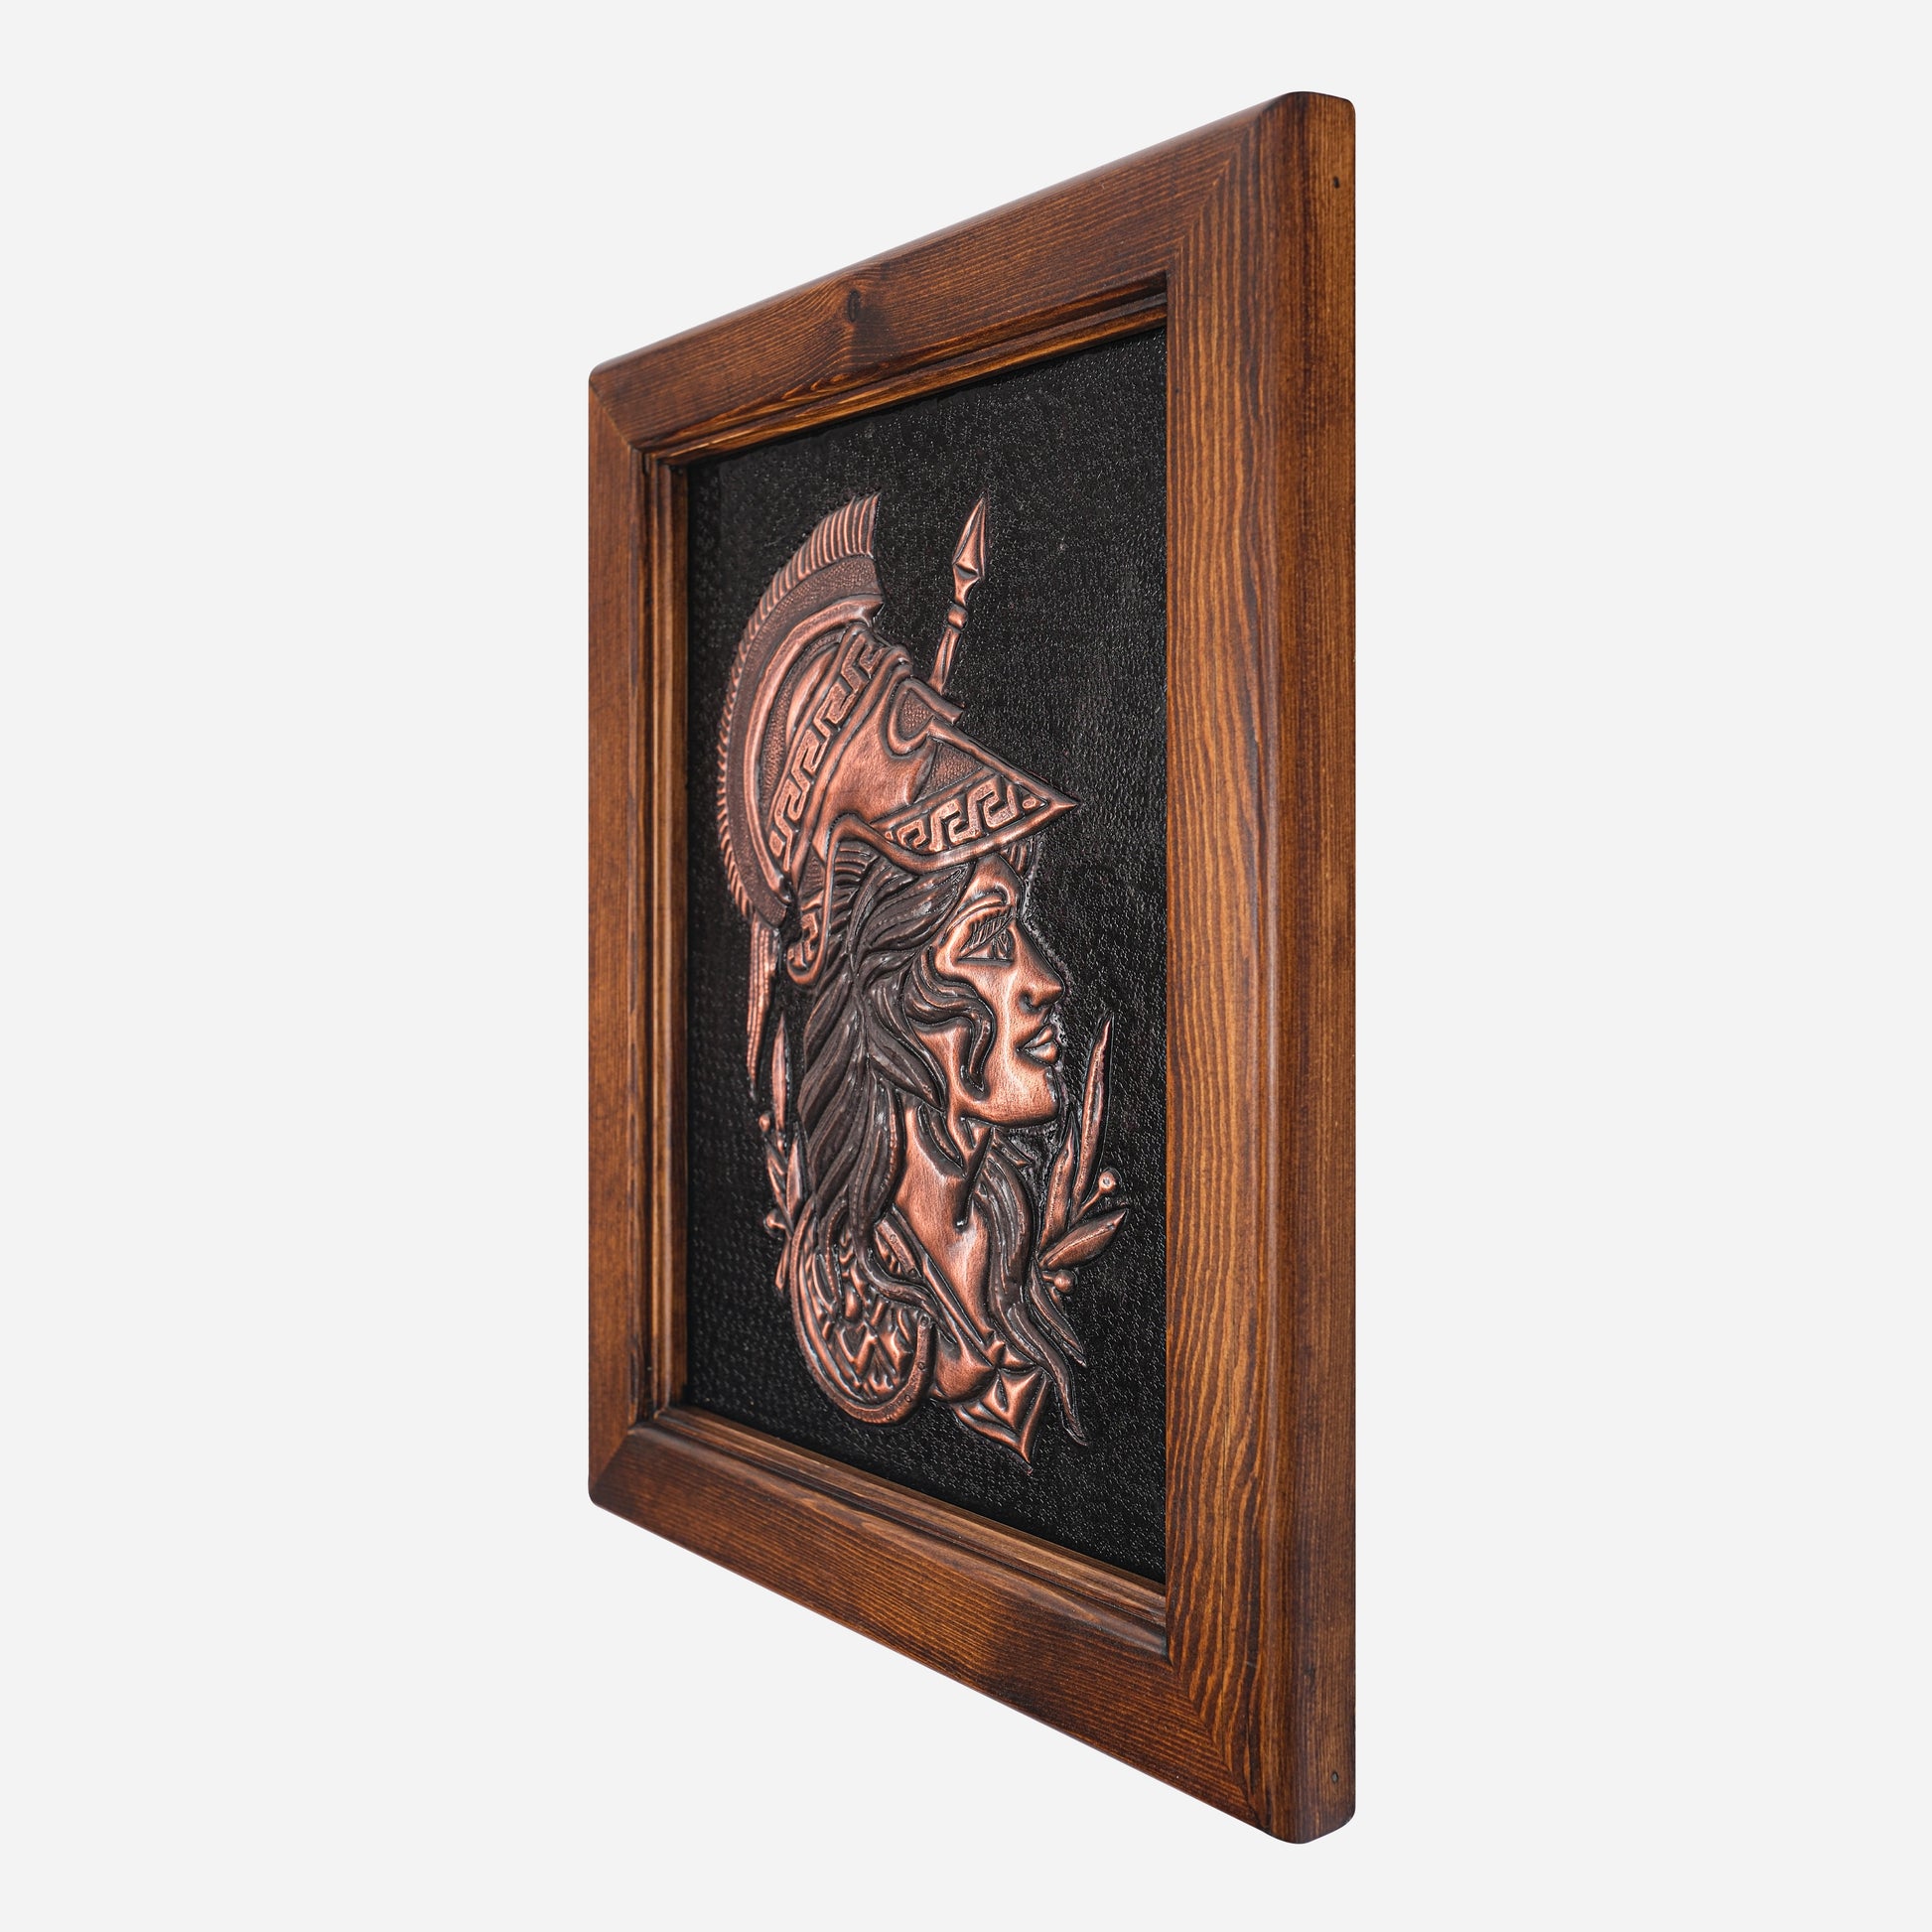 Framed Copper Artwork (Goddess of Wisdom, Athena)